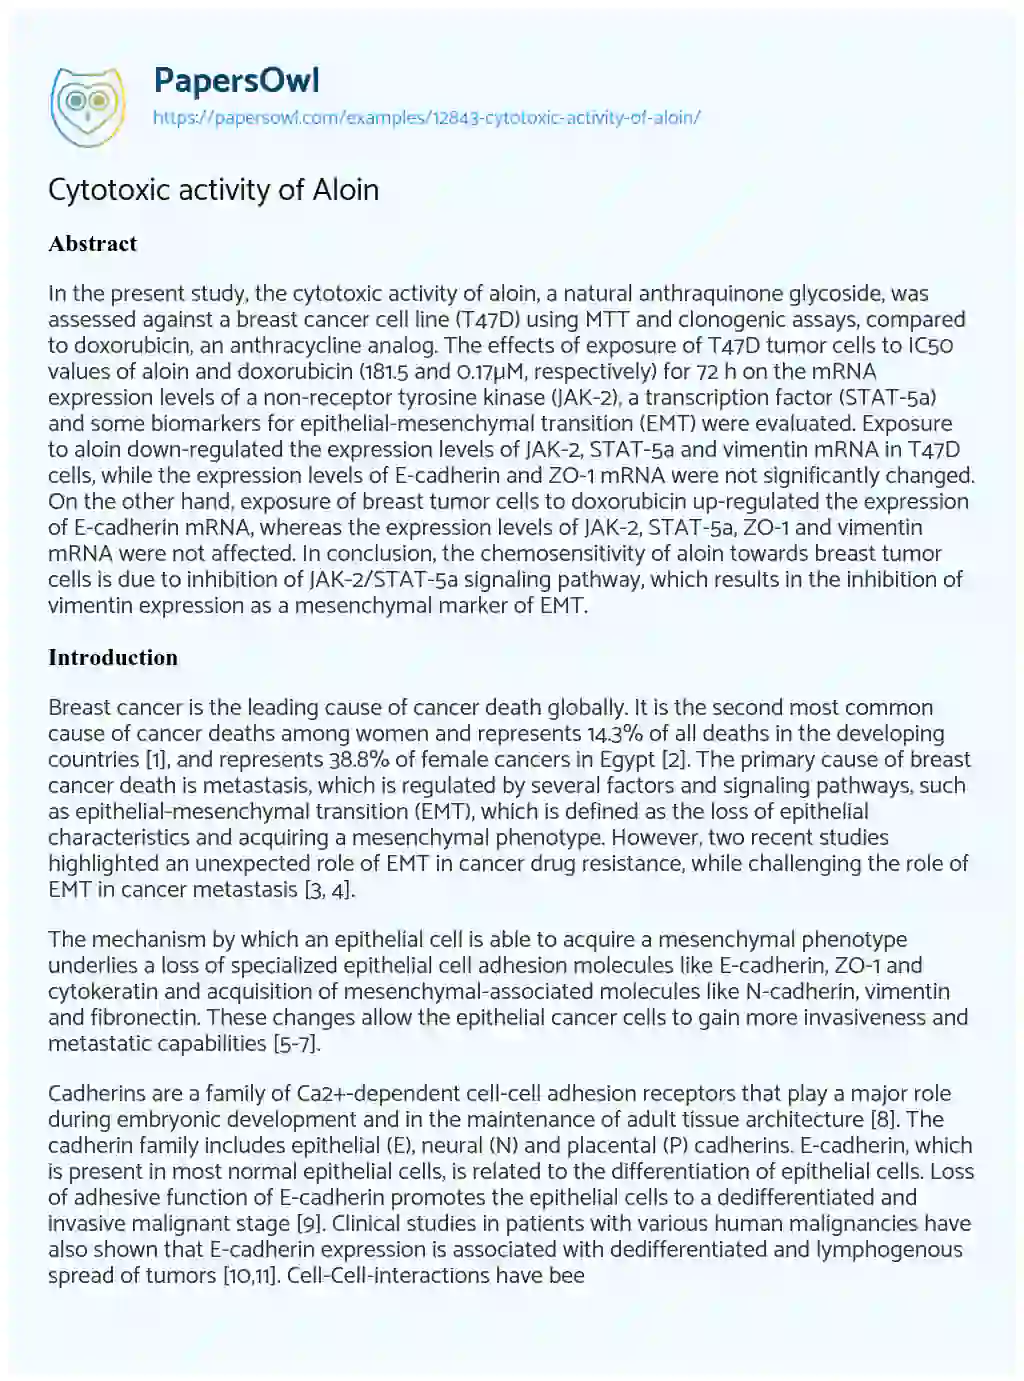 Essay on Cytotoxic Activity of Aloin